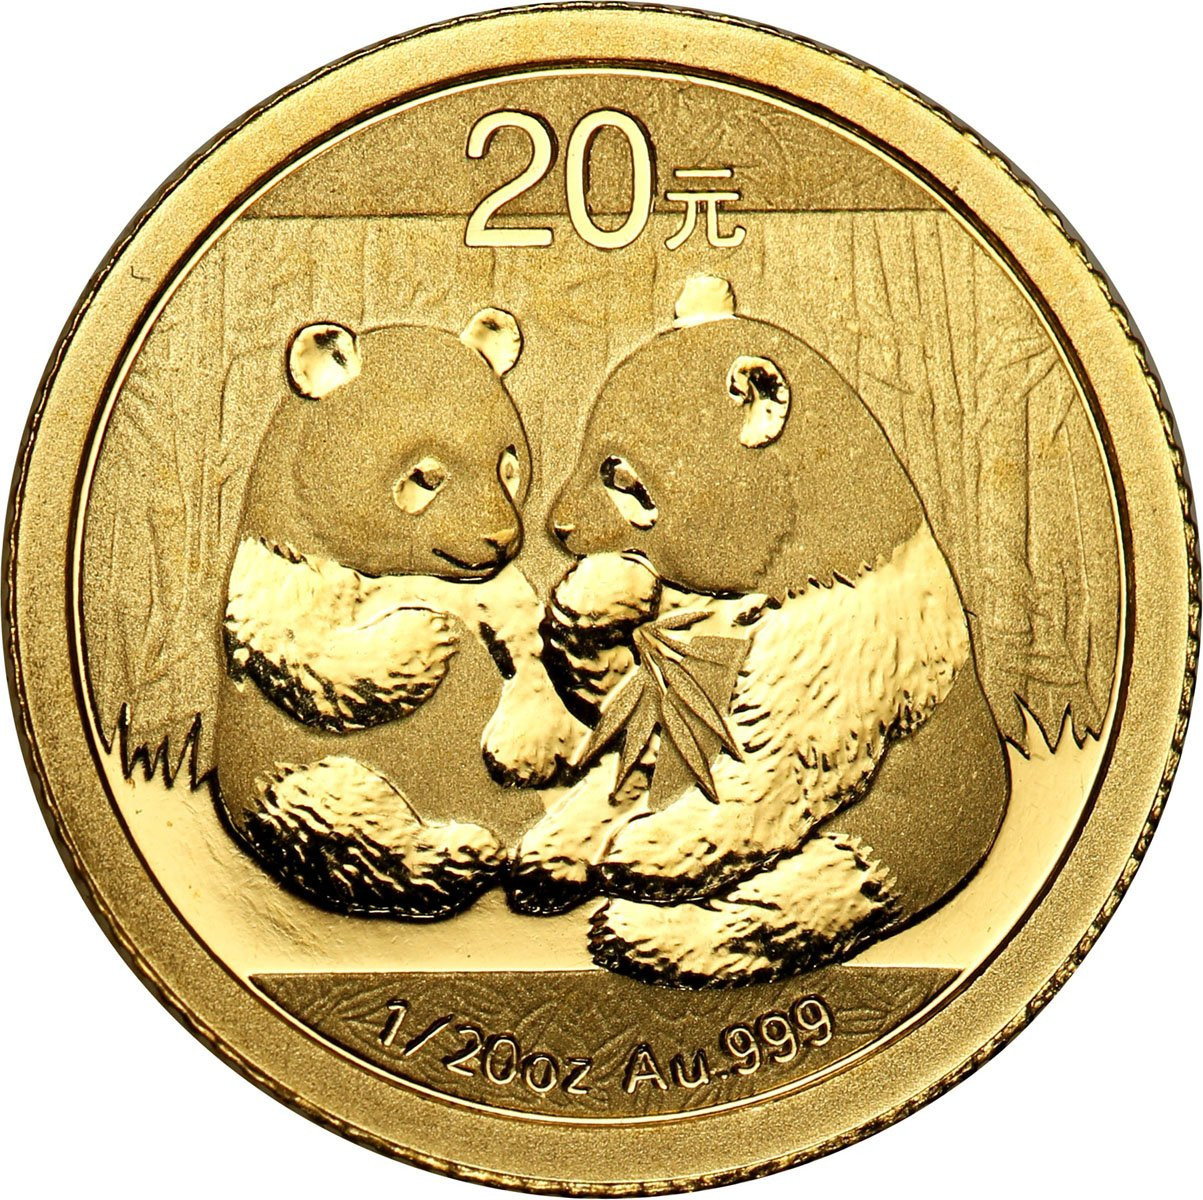 Chiny. 20 Juanów 2009 Panda Wielka - 1/20 uncji złota